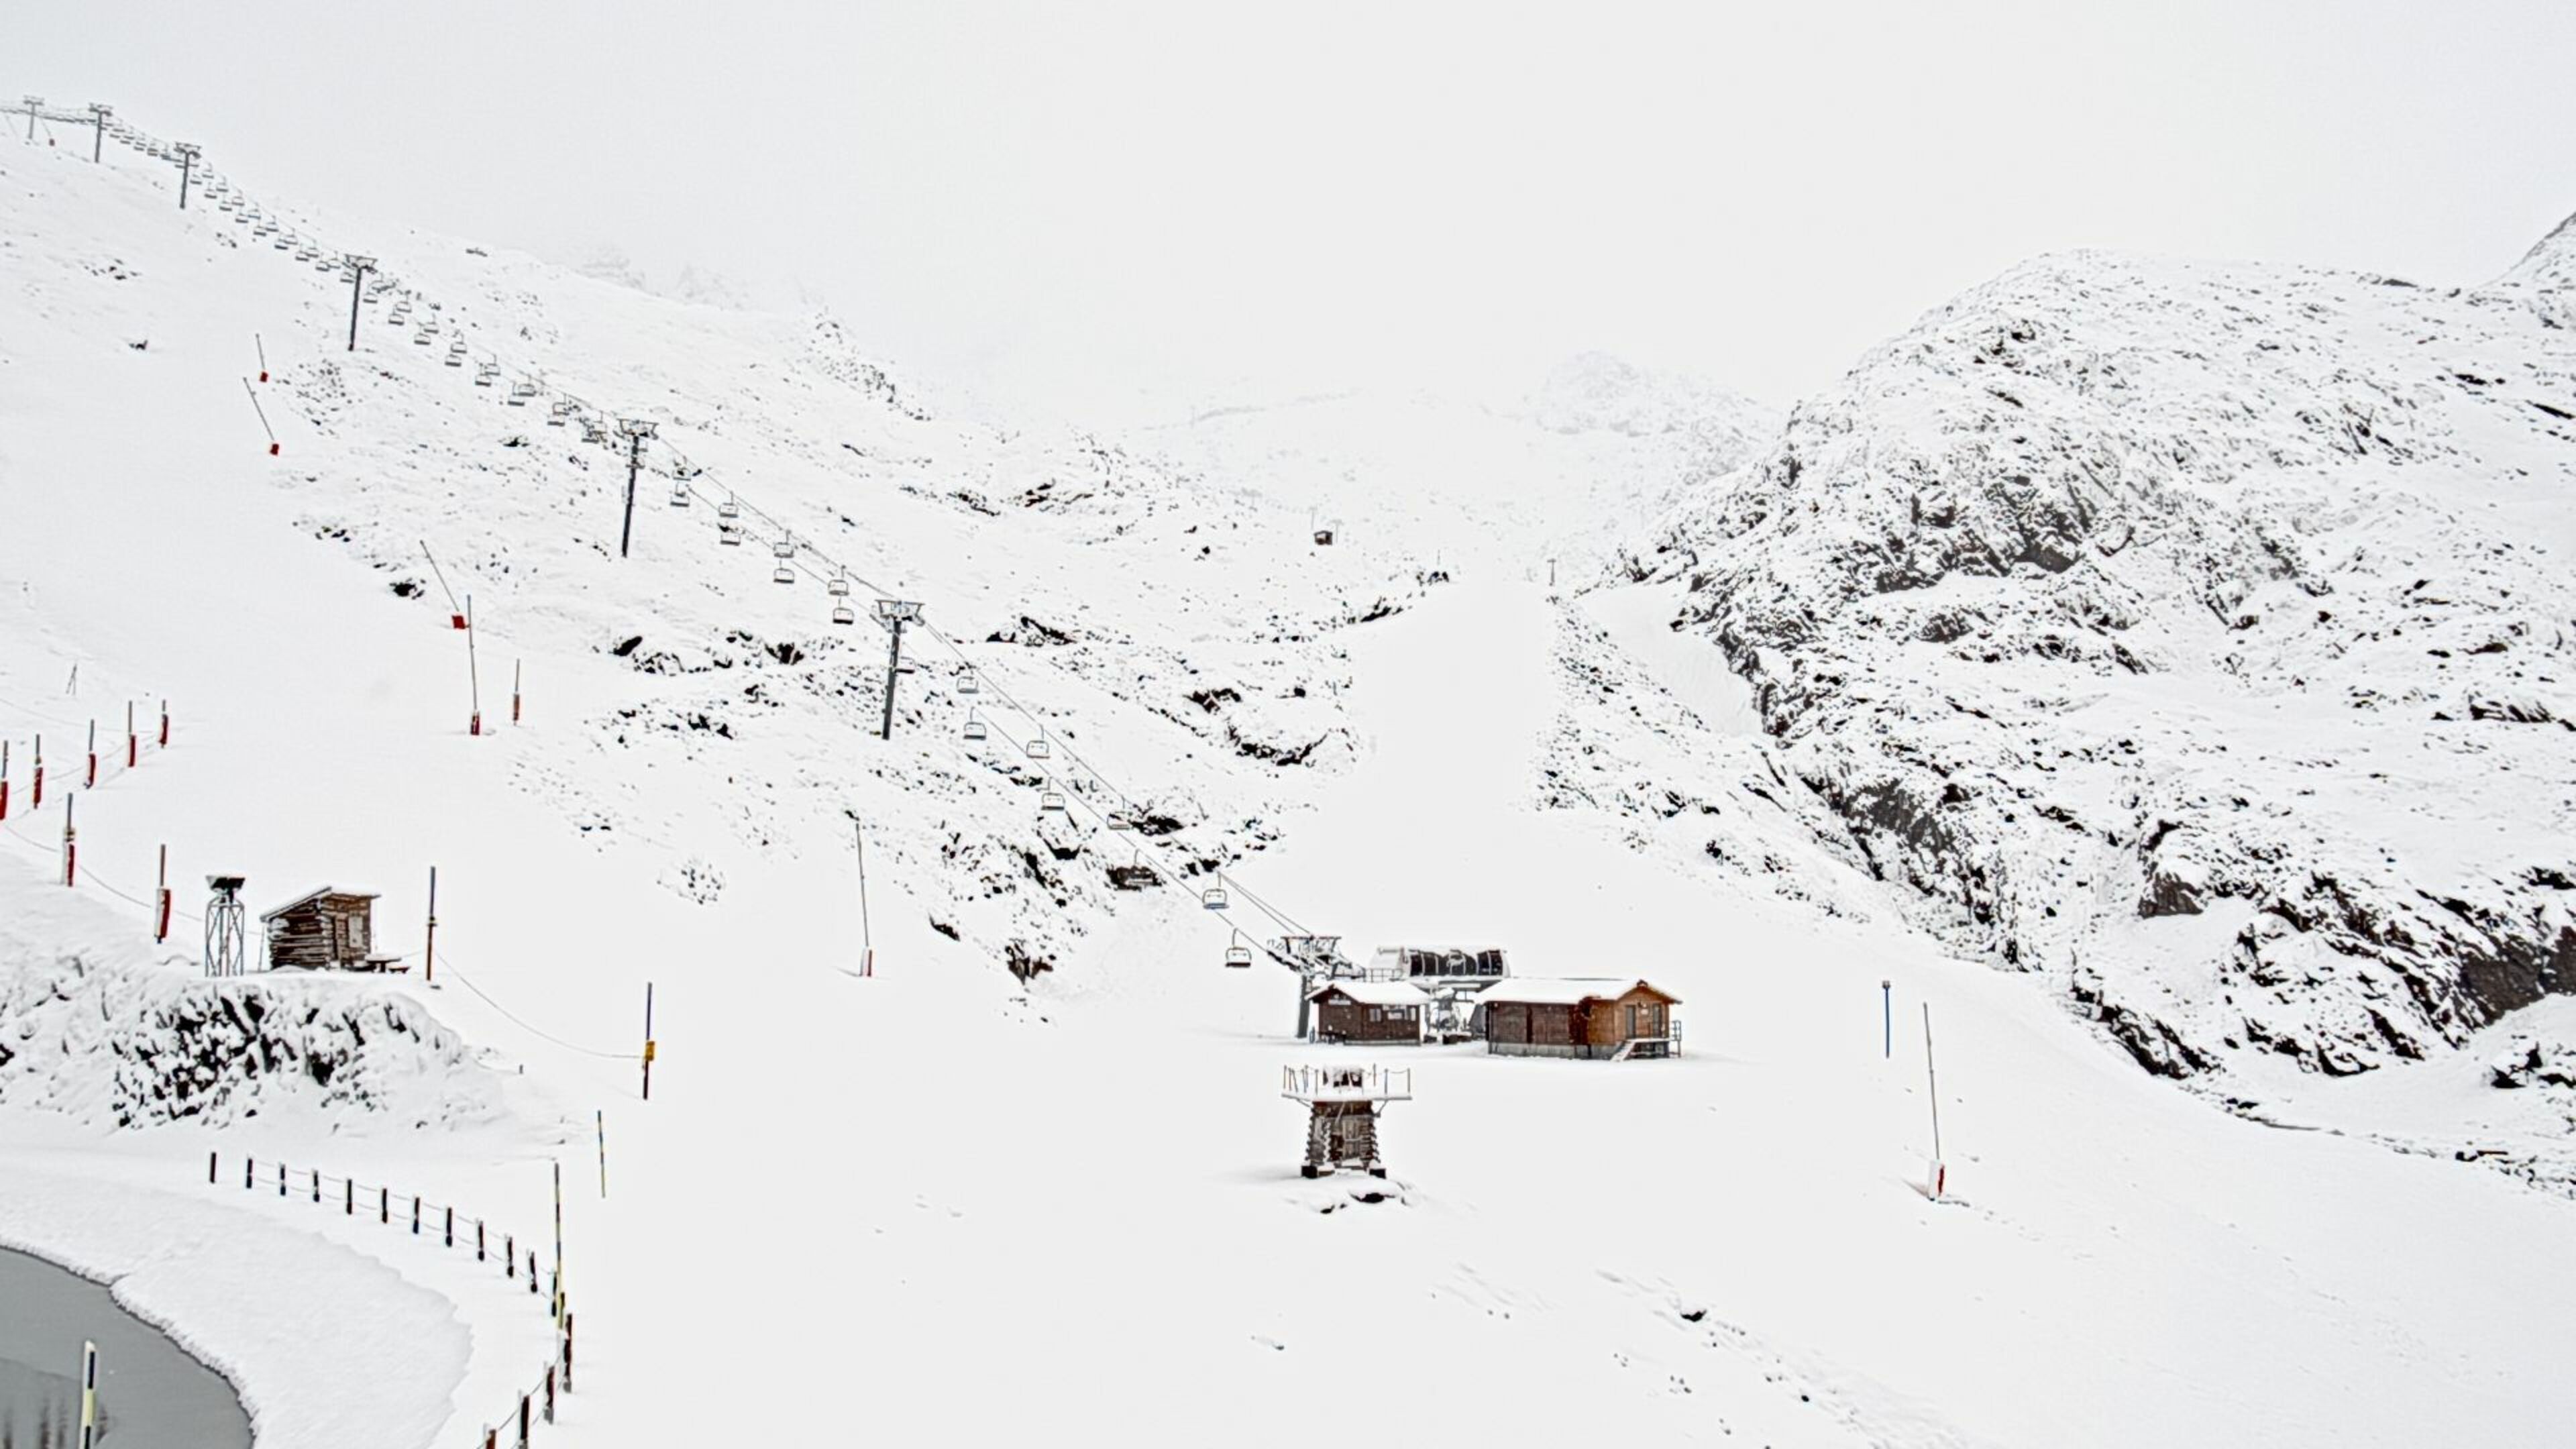 Het sneeuwt al een aantal uren in de Franse Alpen (skaping.com)